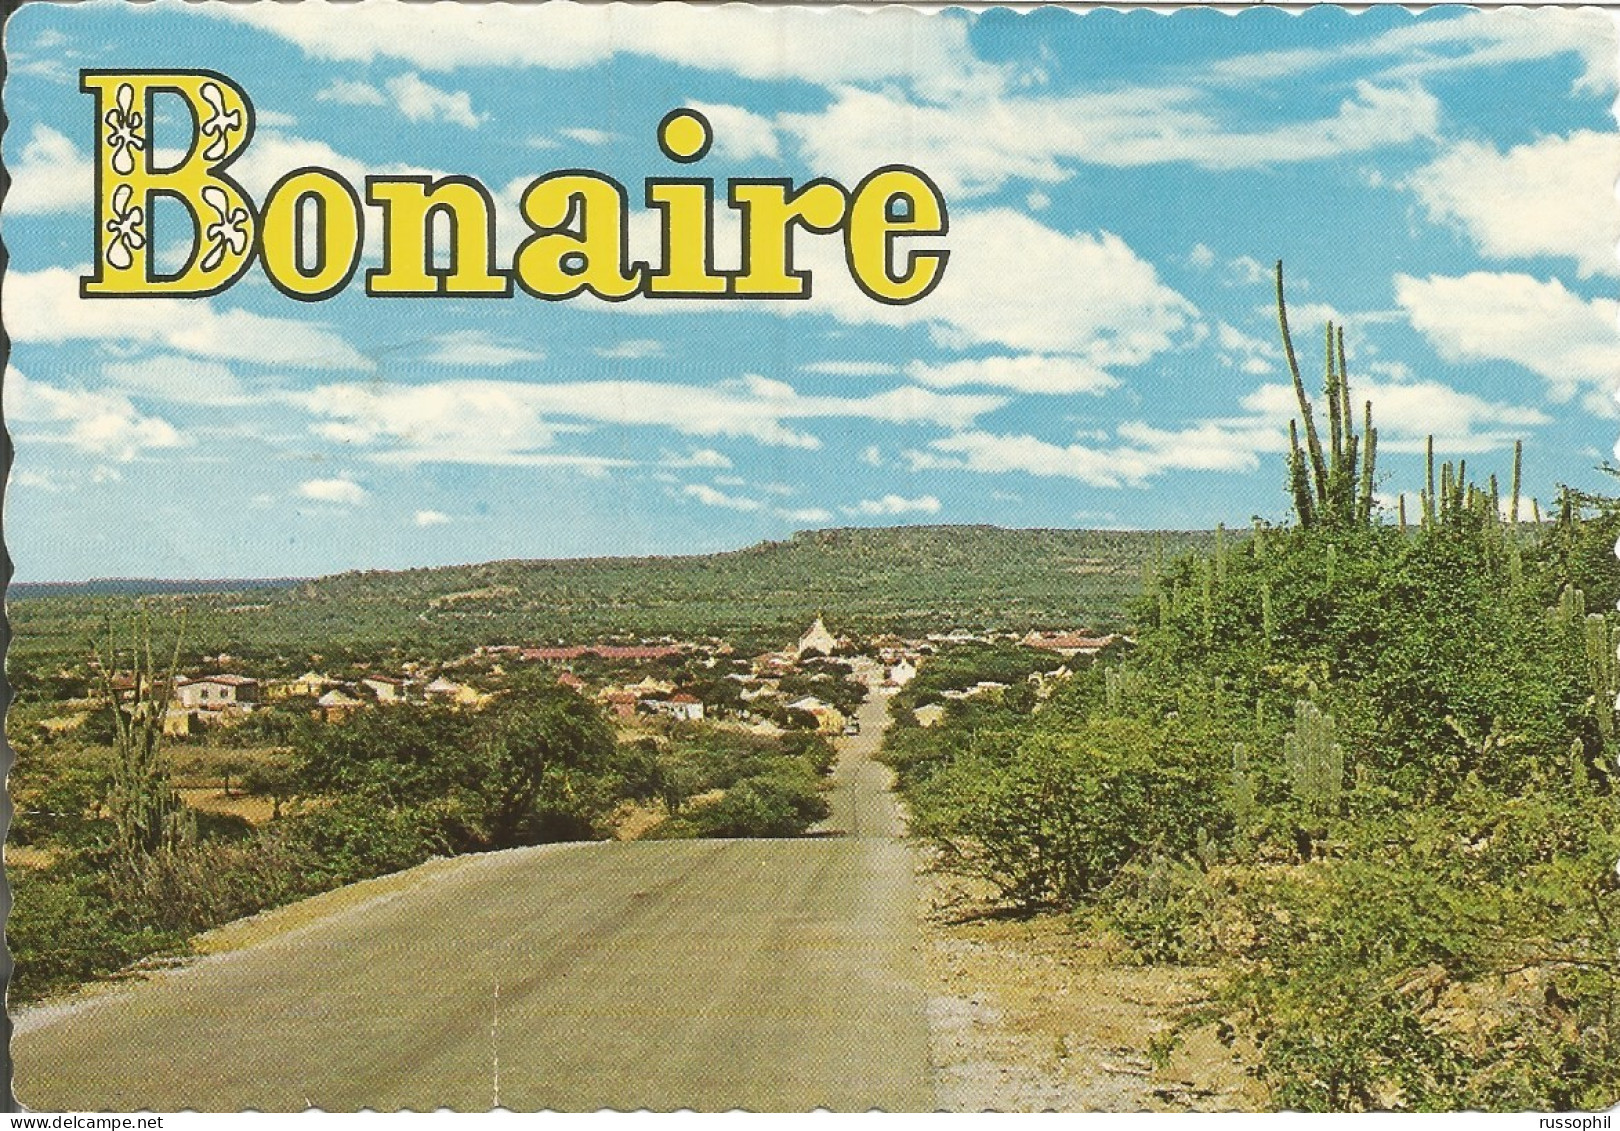 BONAIRE - VIEW OF EARLY SETTLEMENT CALLED RINCON - PUB. DEXTER - 1971 - Bonaire